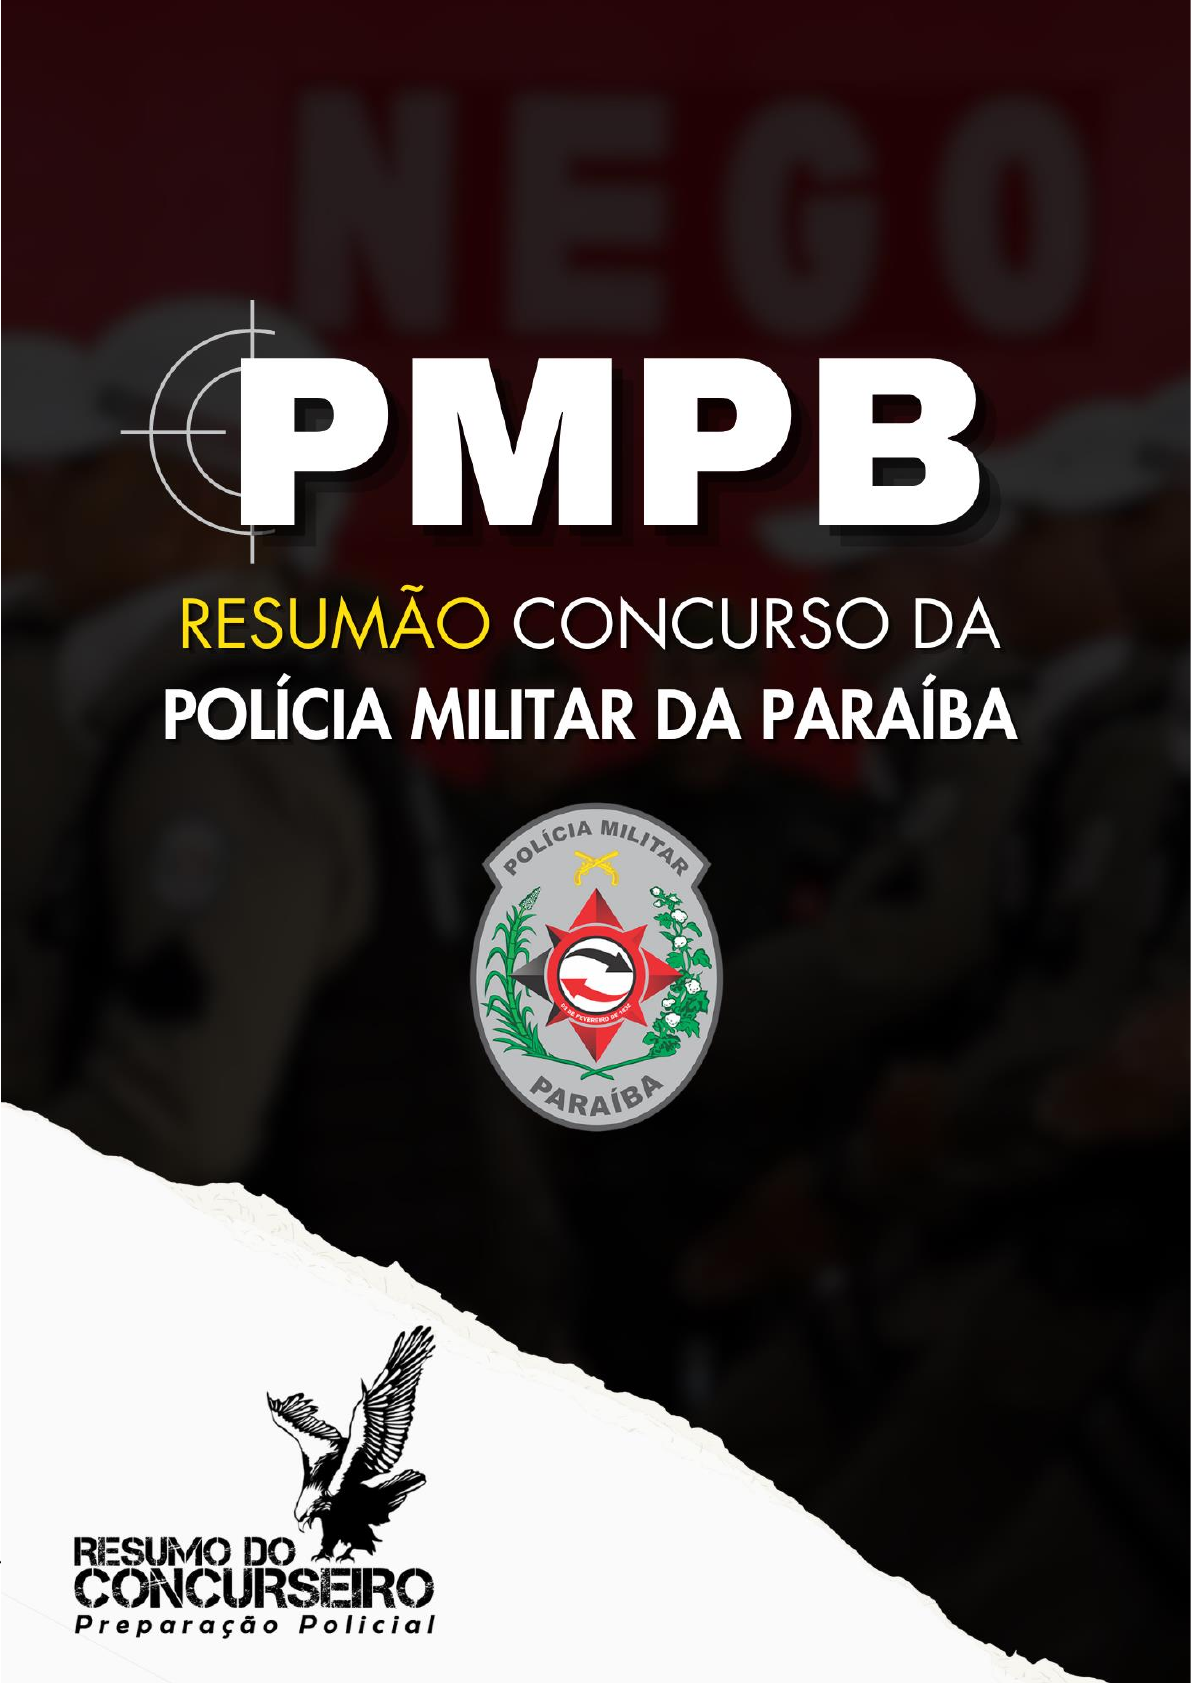 Tela de Menu do Aplicativo Elo. João Pessoa-PB, 2022.